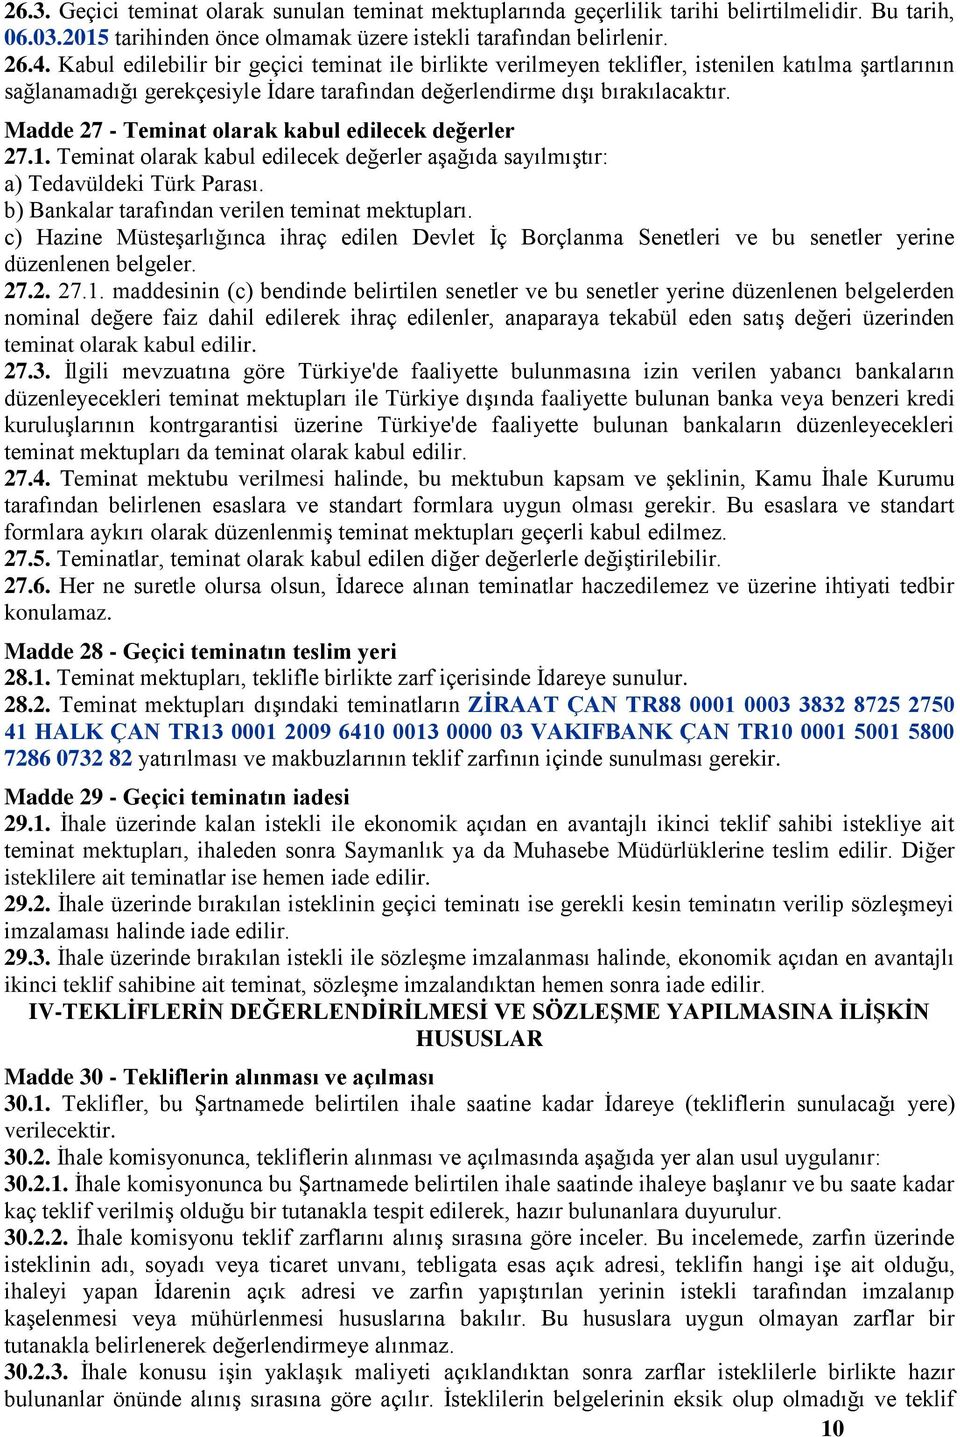 Madde 27 - Teminat olarak kabul edilecek değerler 27.1. Teminat olarak kabul edilecek değerler aģağıda sayılmıģtır: a) Tedavüldeki Türk Parası. b) Bankalar tarafından verilen teminat mektupları.